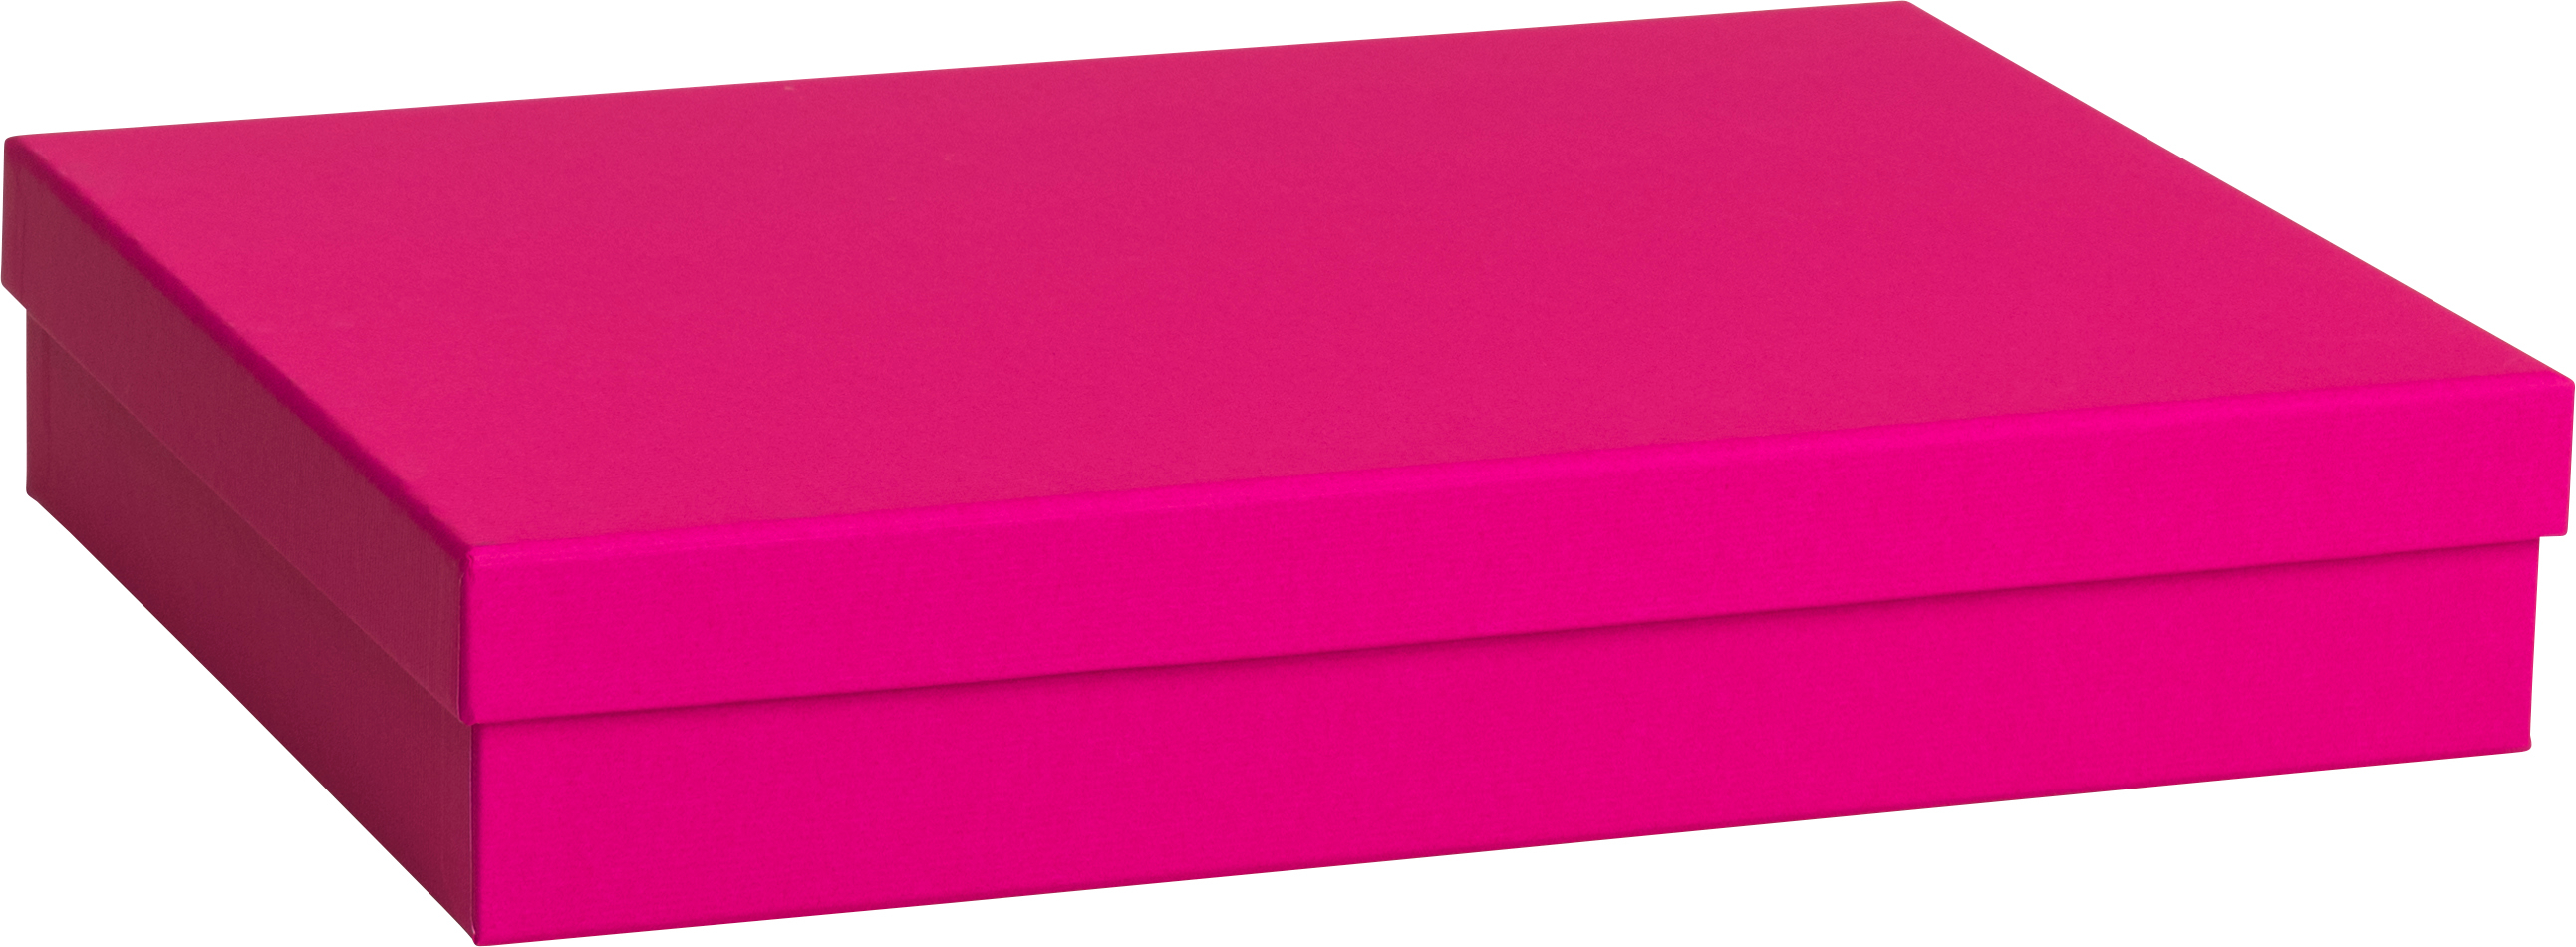 STEWO Boîte cadeau One Colour 2551783693 pink 24x33x6cm